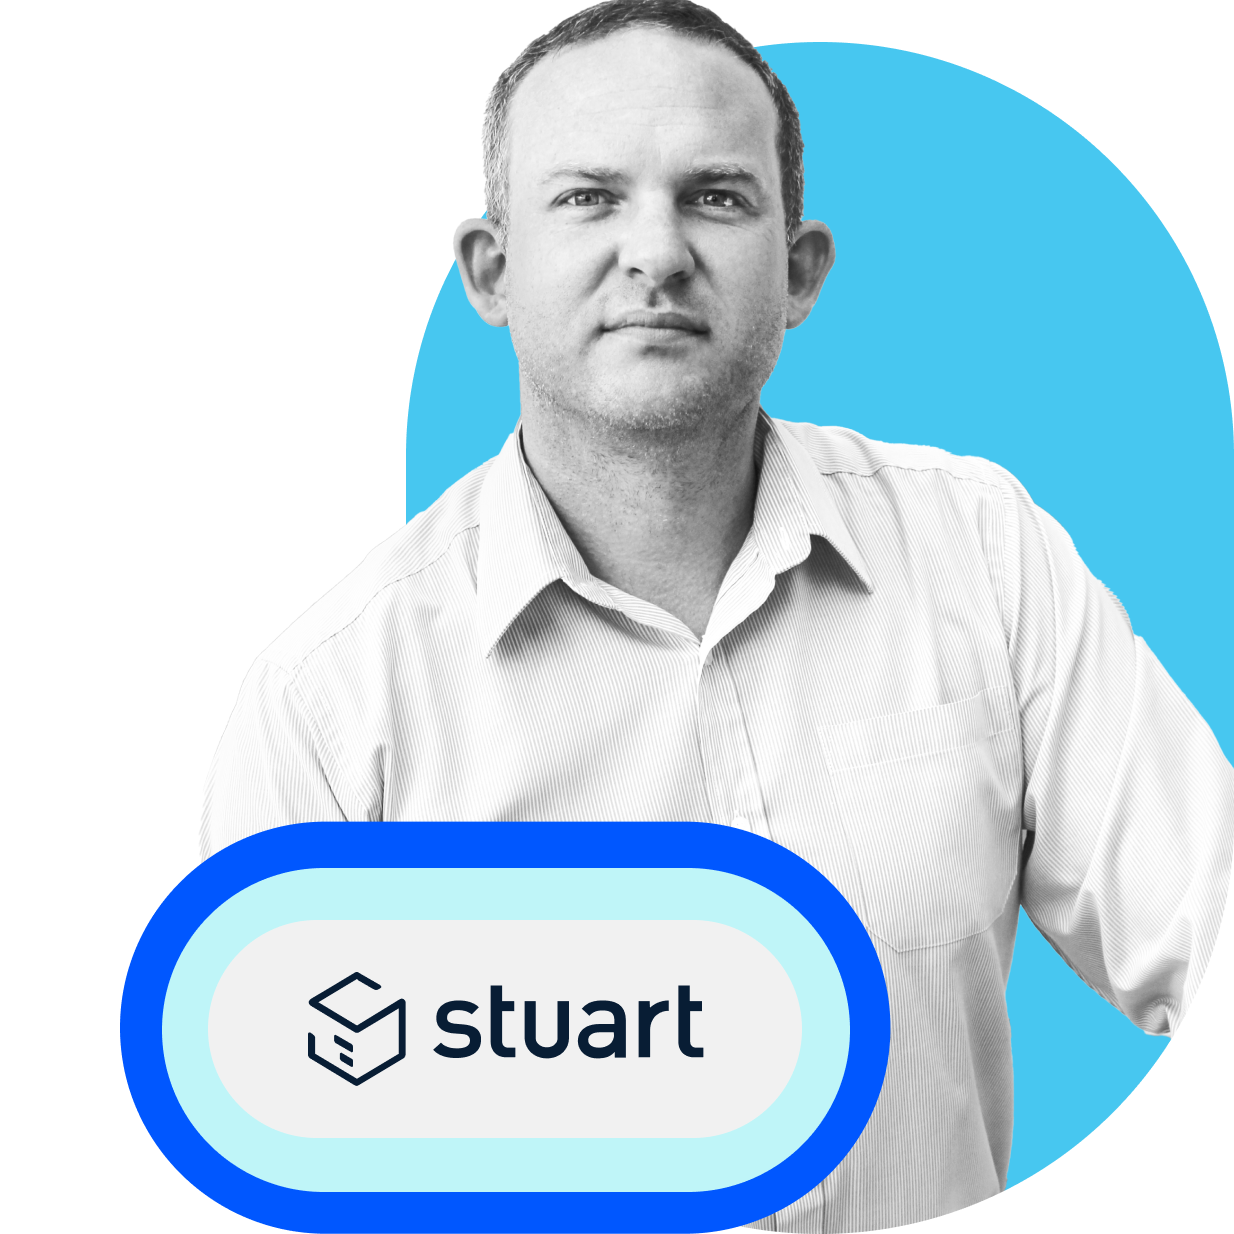 Stuart usa Intercom para mantener el interés de los clientes y ayudarlos de manera proactiva en el momento oportuno